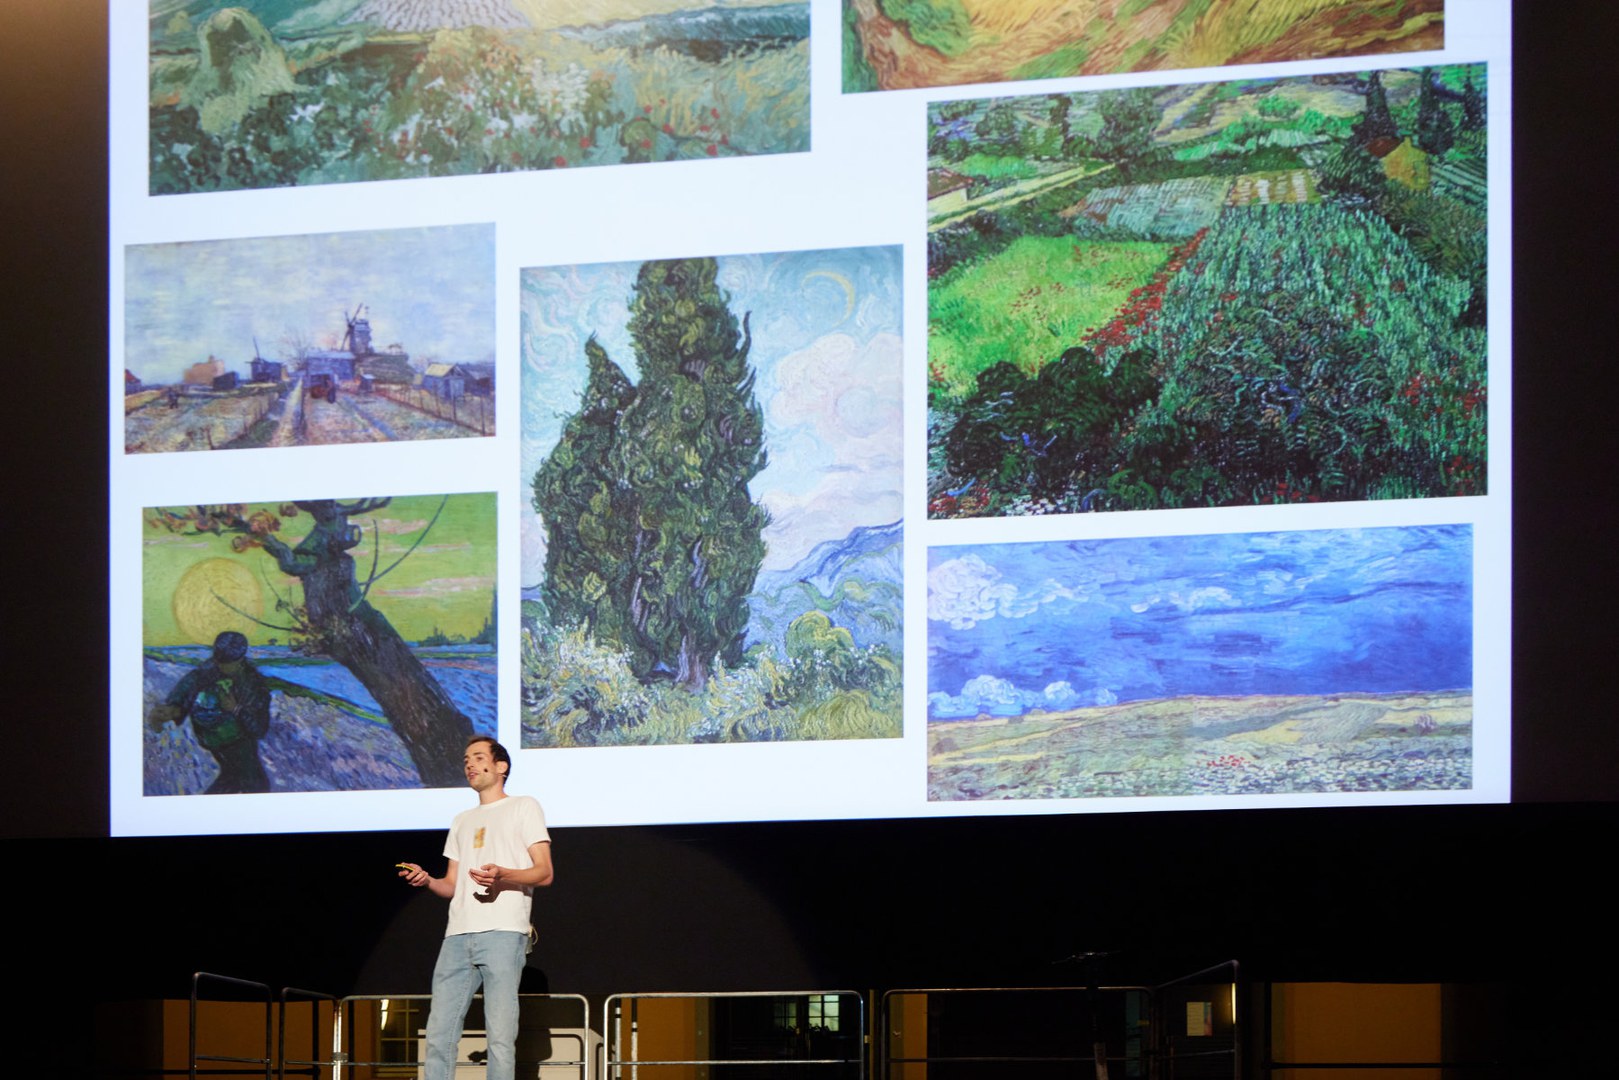 Ist das Kunst oder kann das weg? Wie Maschinen Pflanzenbilder für die Landwirtschaft der Zukunft malen, erklärte Geodät Lukas Drees vom Exzellenzcluster PhenoRob in seinem Slam. Kunstwerke von van Gogh halfen ihm bei der Veranschaulichung.